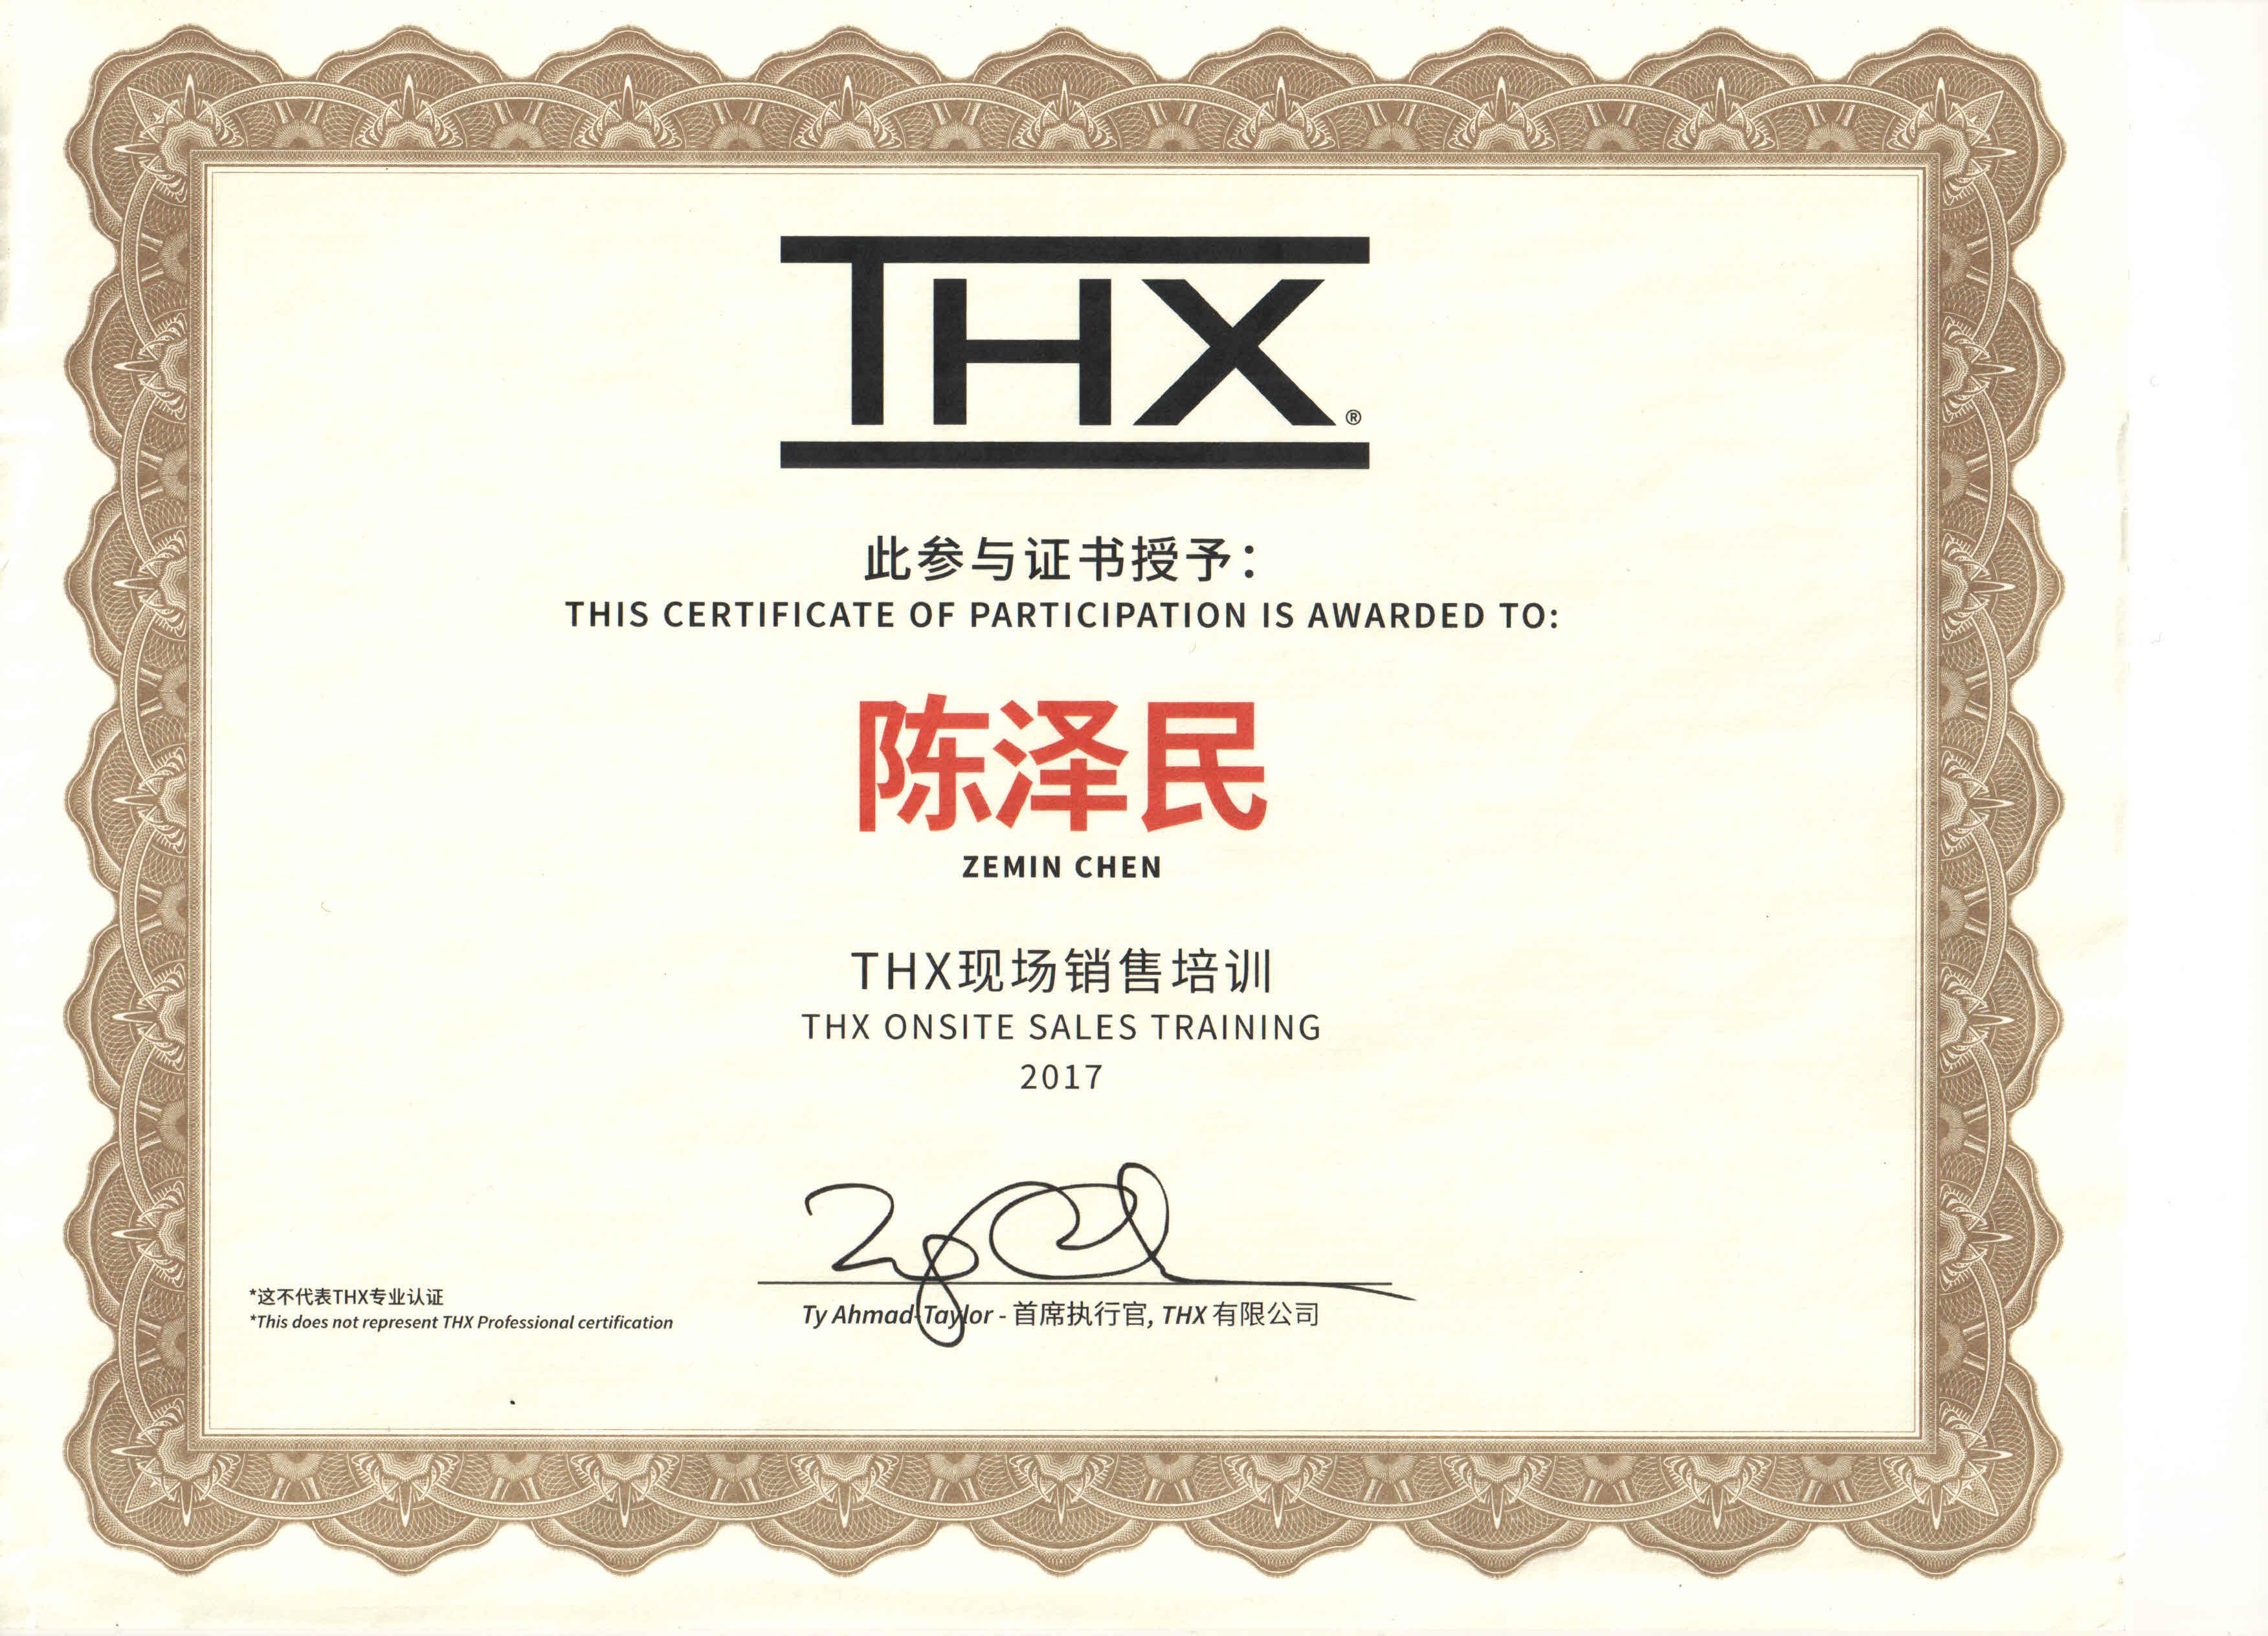 2017陈泽民获得“THX现场销售培训”证书